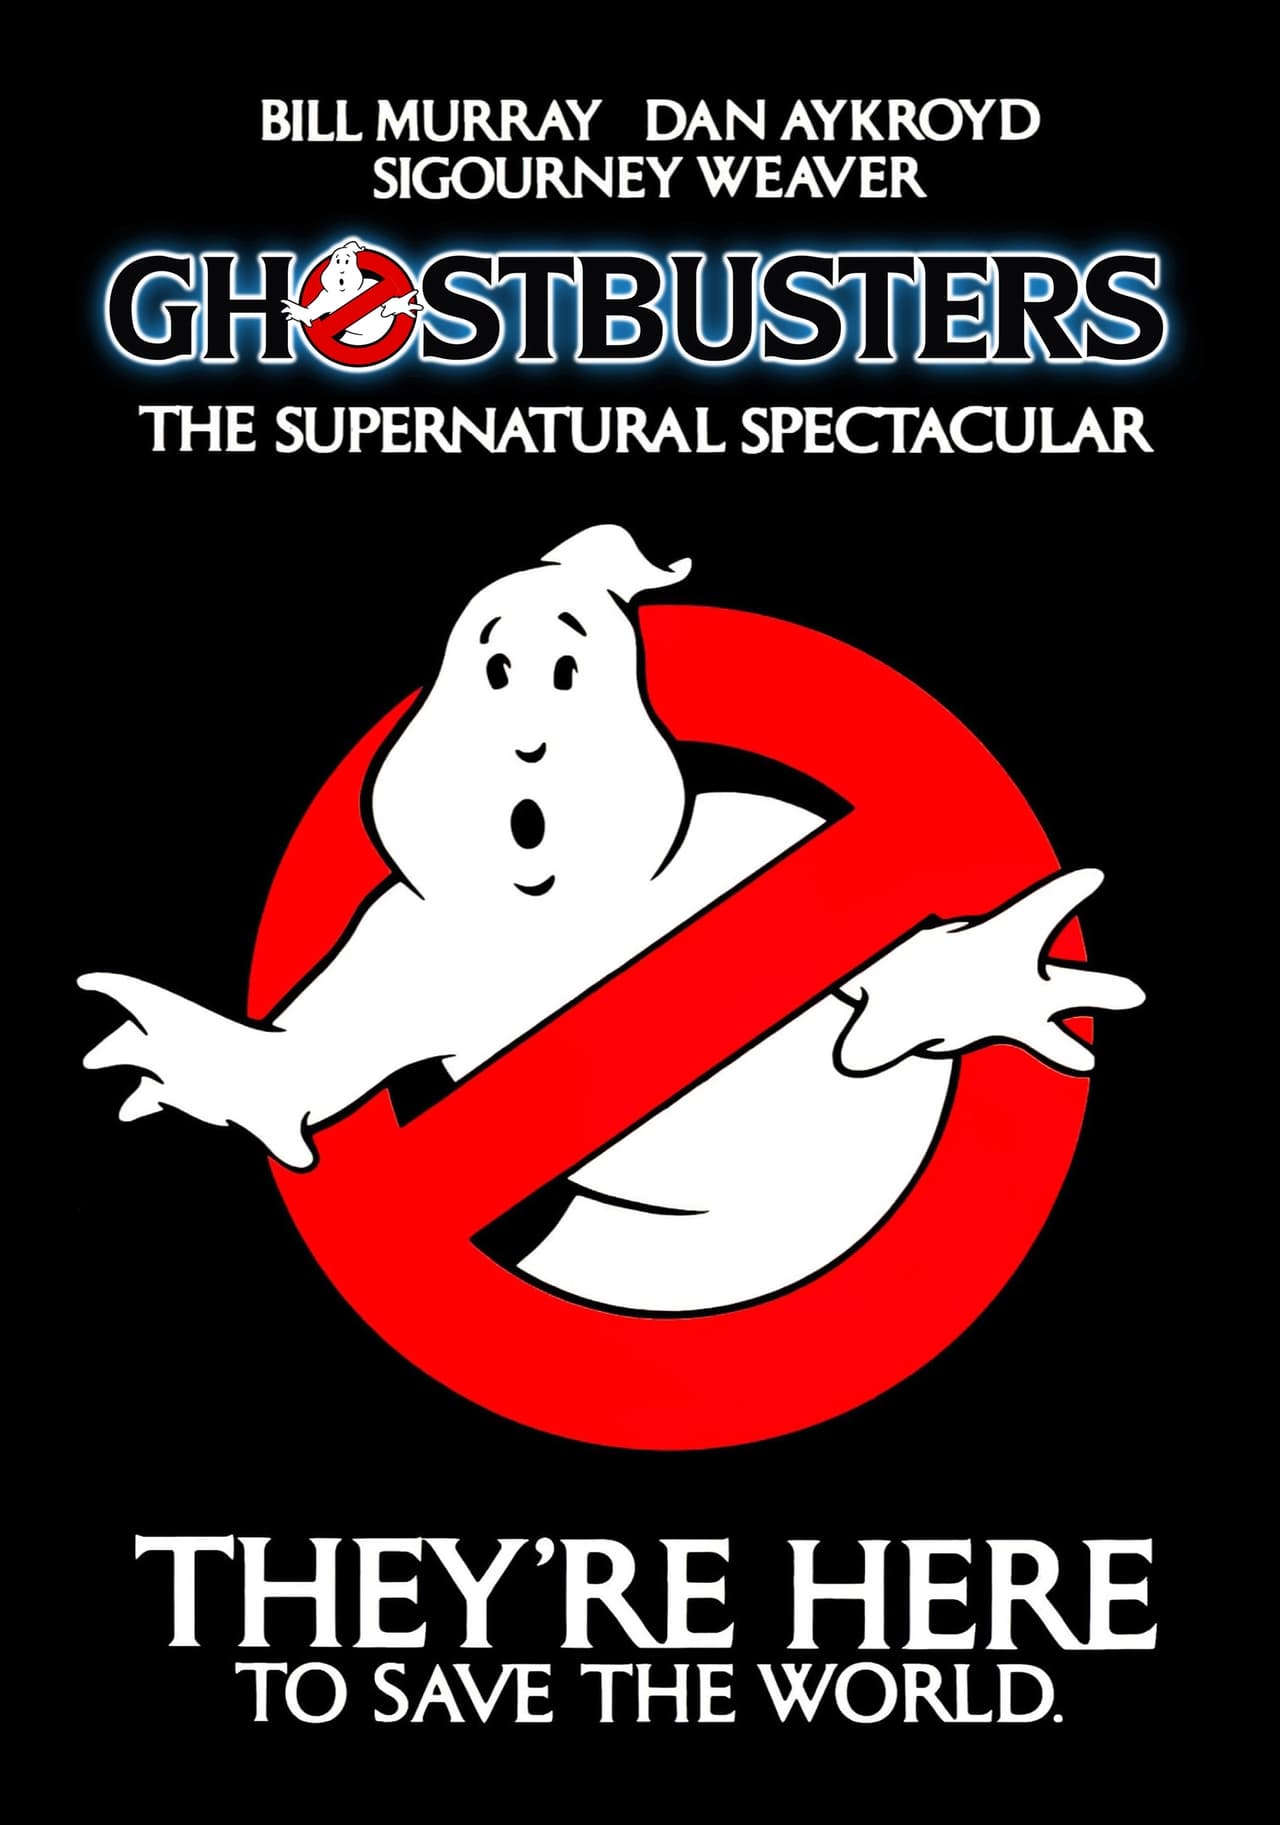 Ghostbusters (1984) 192Kbps 23.976Fps 48Khz 2.0Ch DigitalTV Turkish Audio TAC